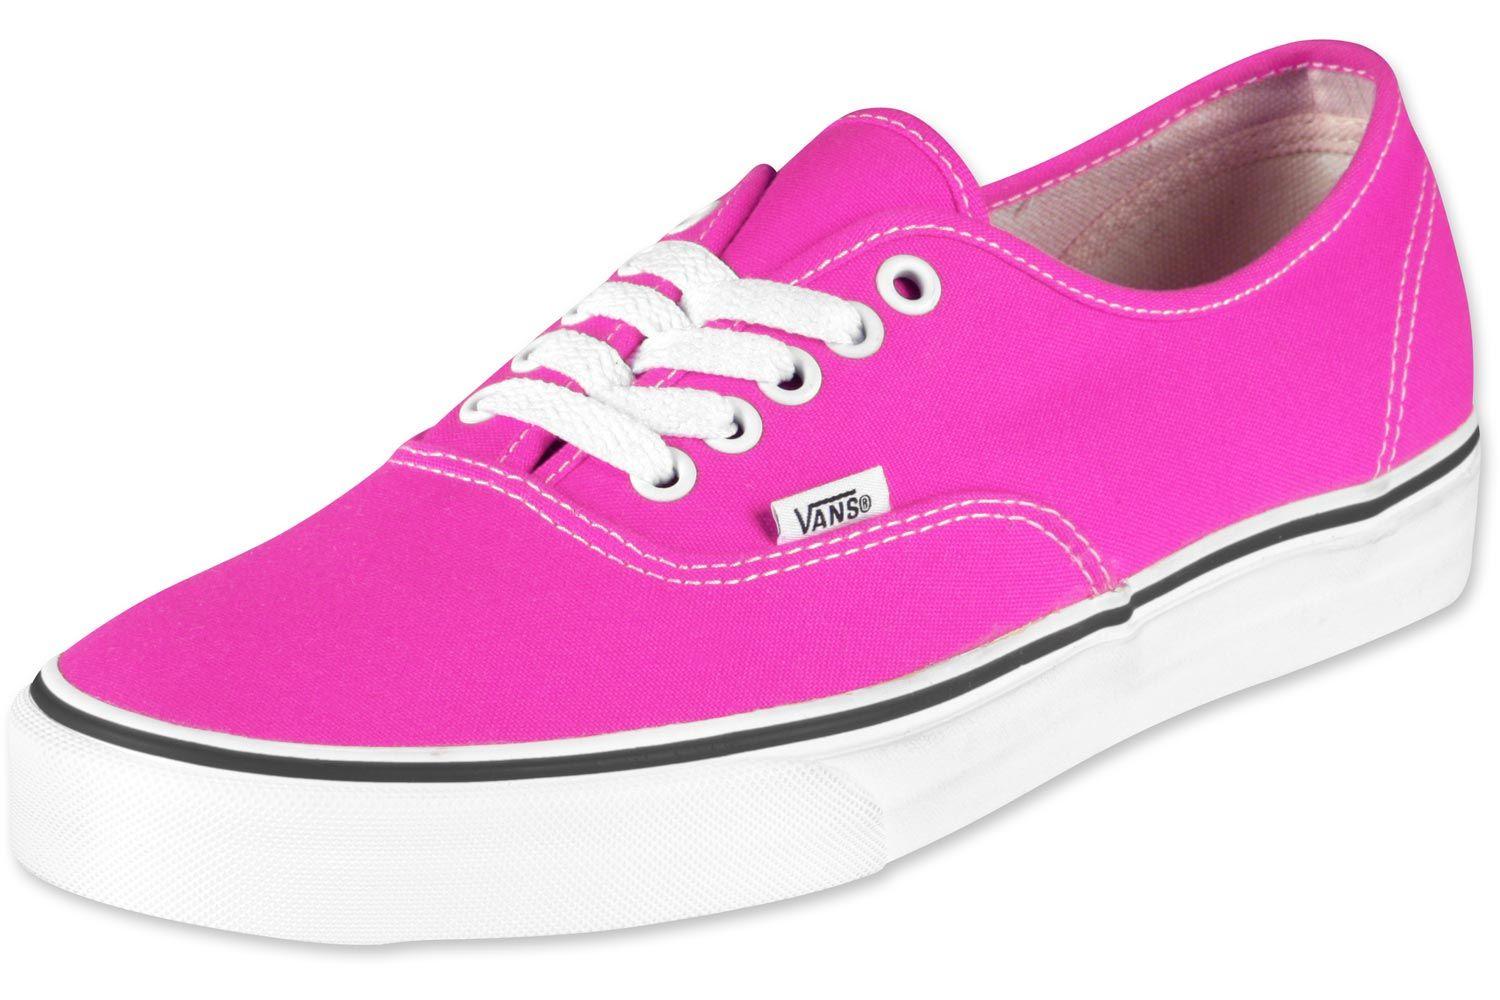 Cool Neon Vans Logo - Vans Authentic shoes neon pink